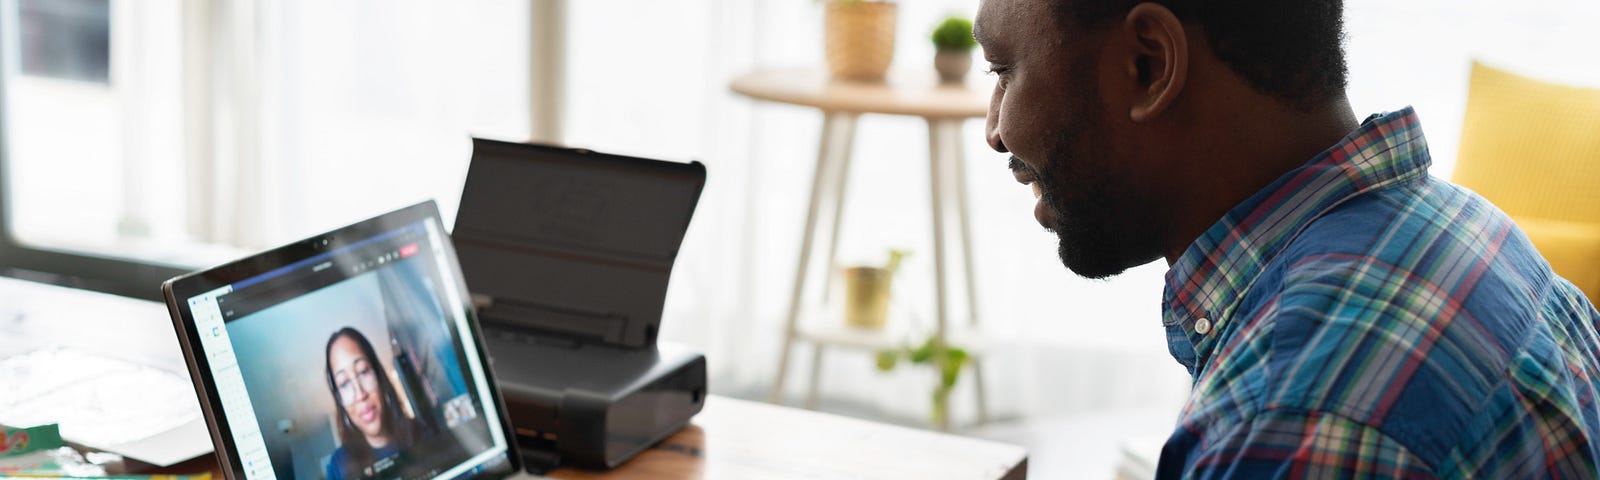 Homem negro em frente ao computador sentado, conversando com uma mulher. O computador está sobre a mesa